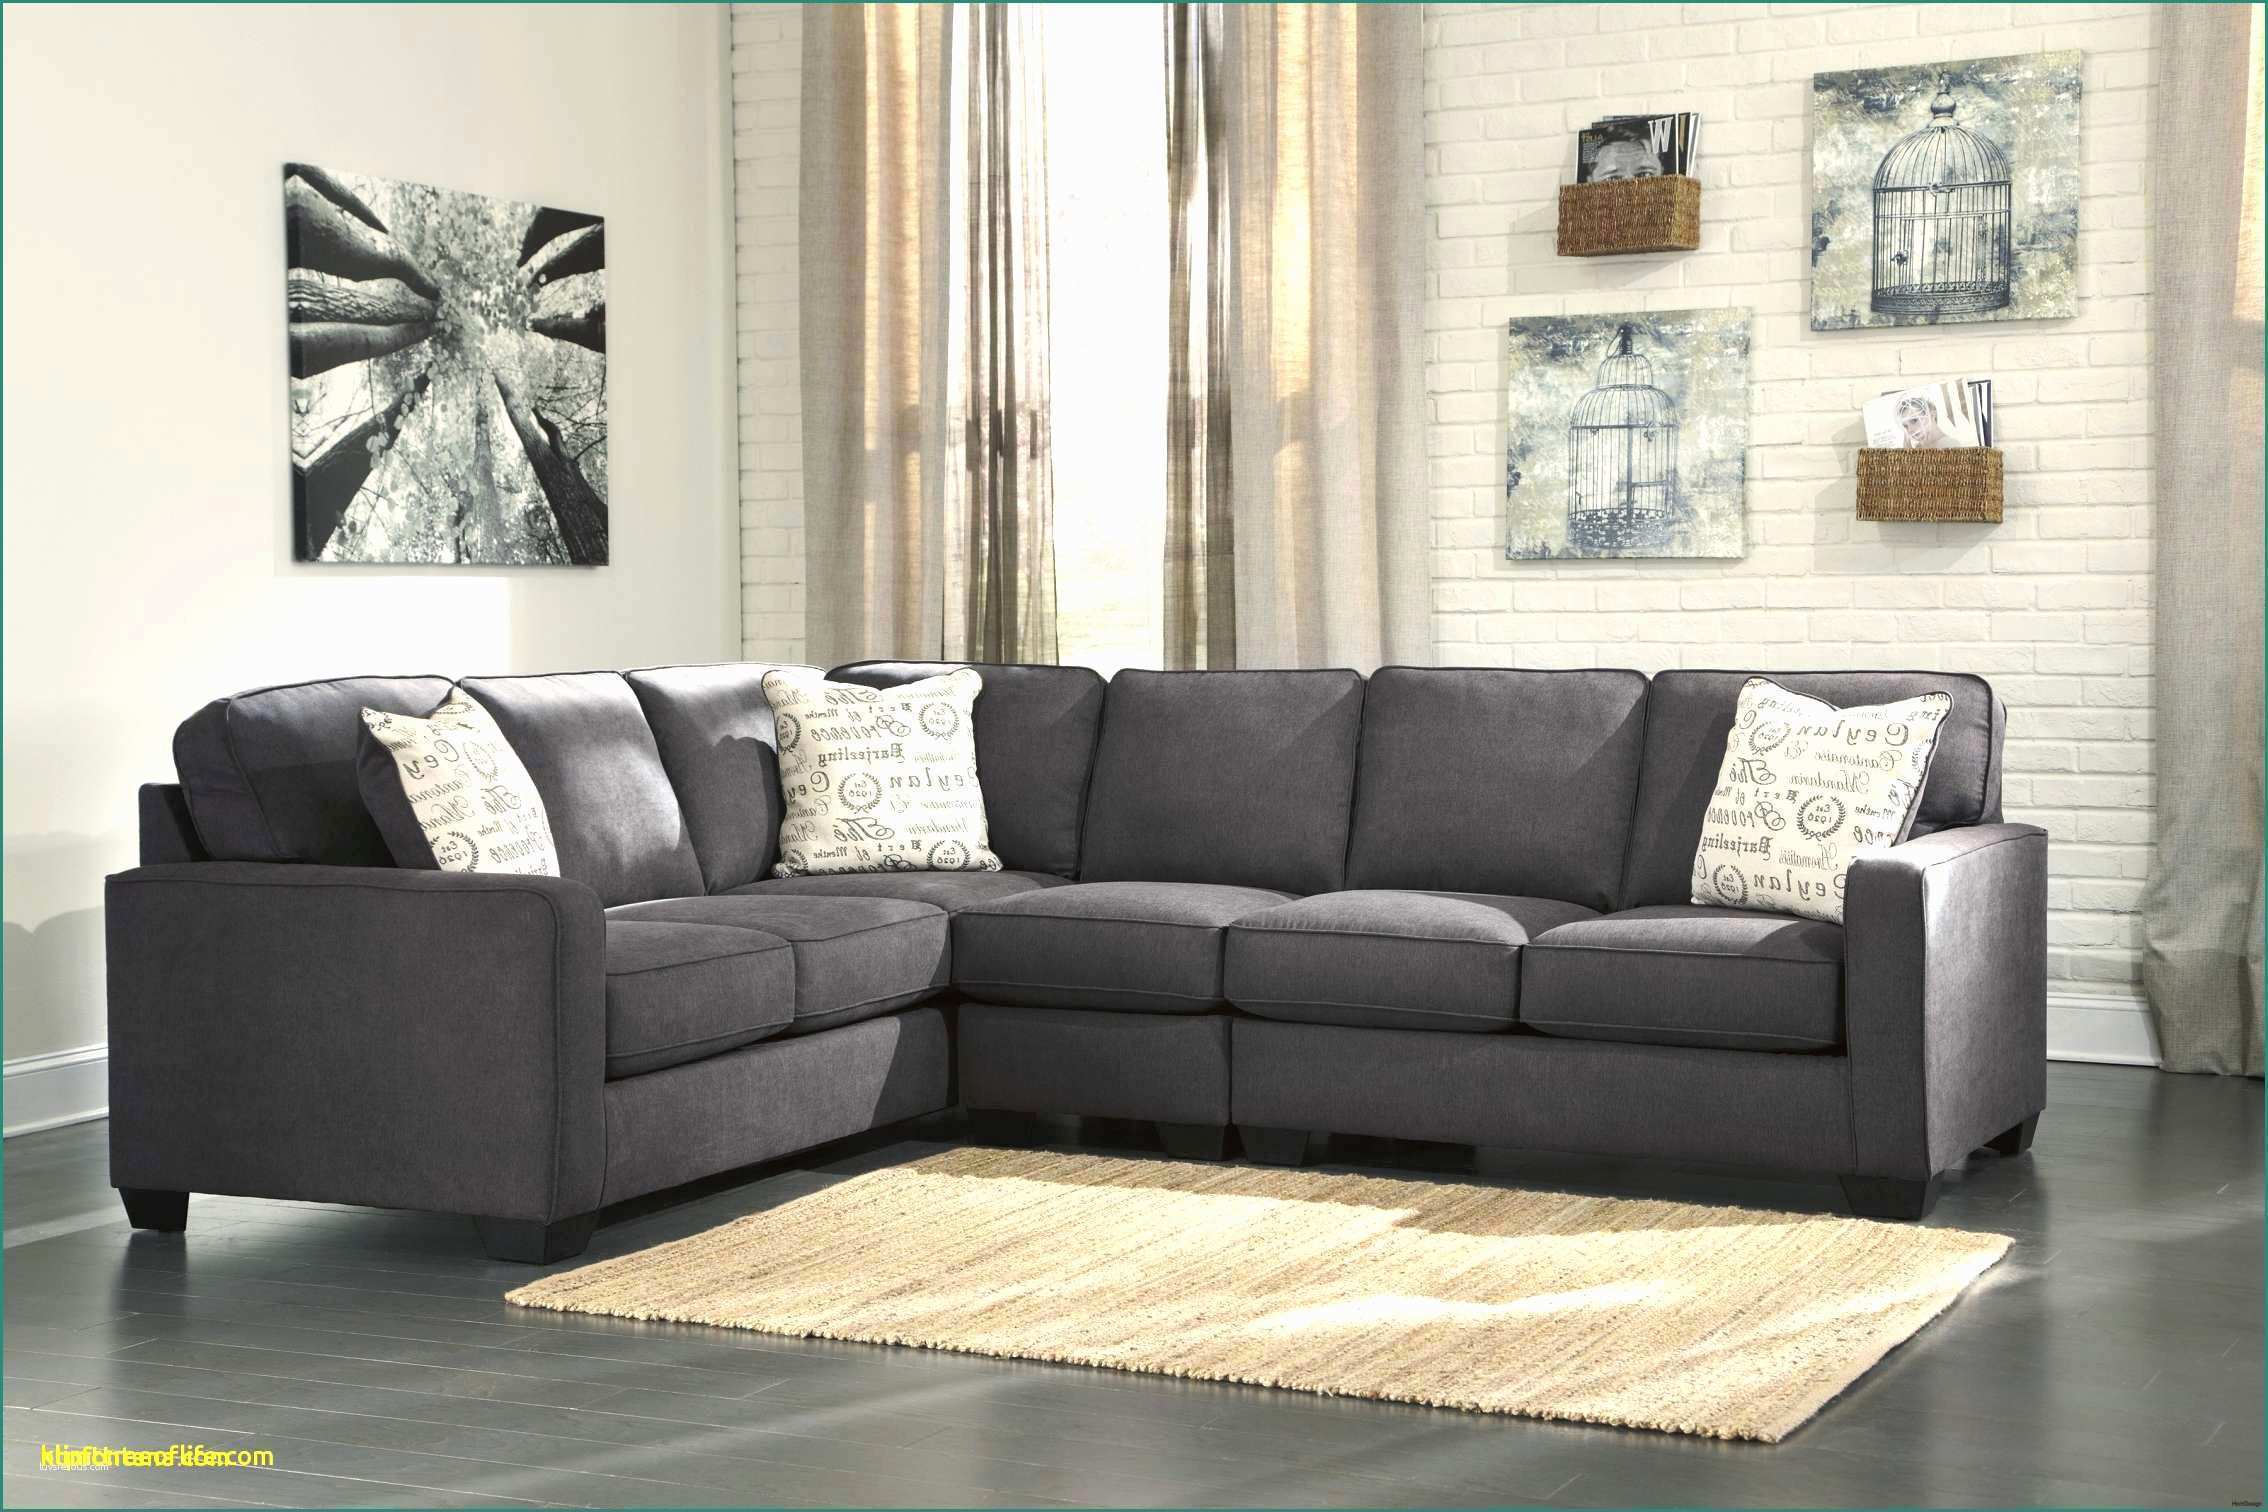 Divani by Natuzzi E Gray Leather Sectional sofa Lovely 50 Lovely Faux Leather Sectional